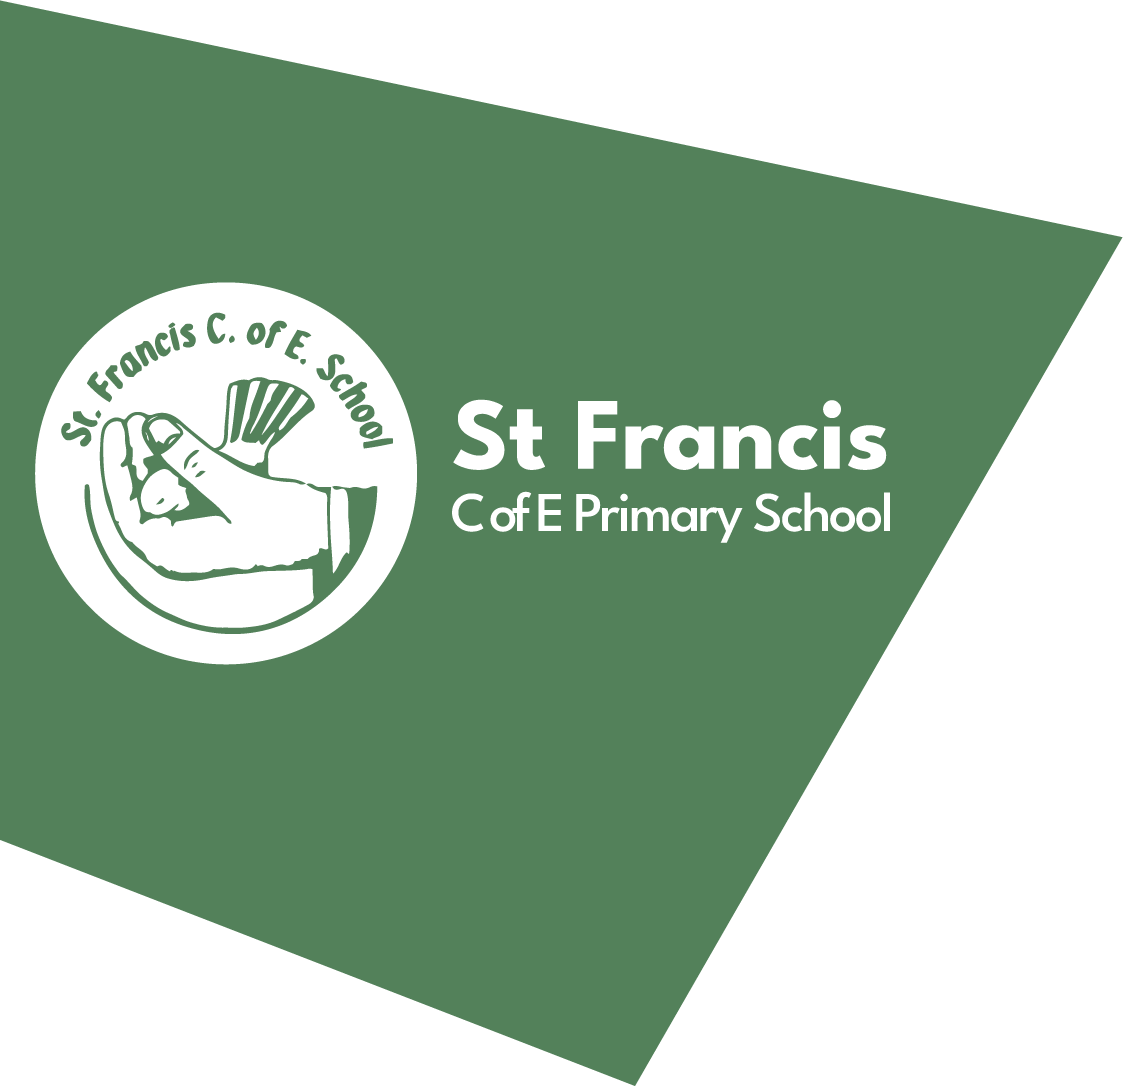 St Francis CofE Primary School